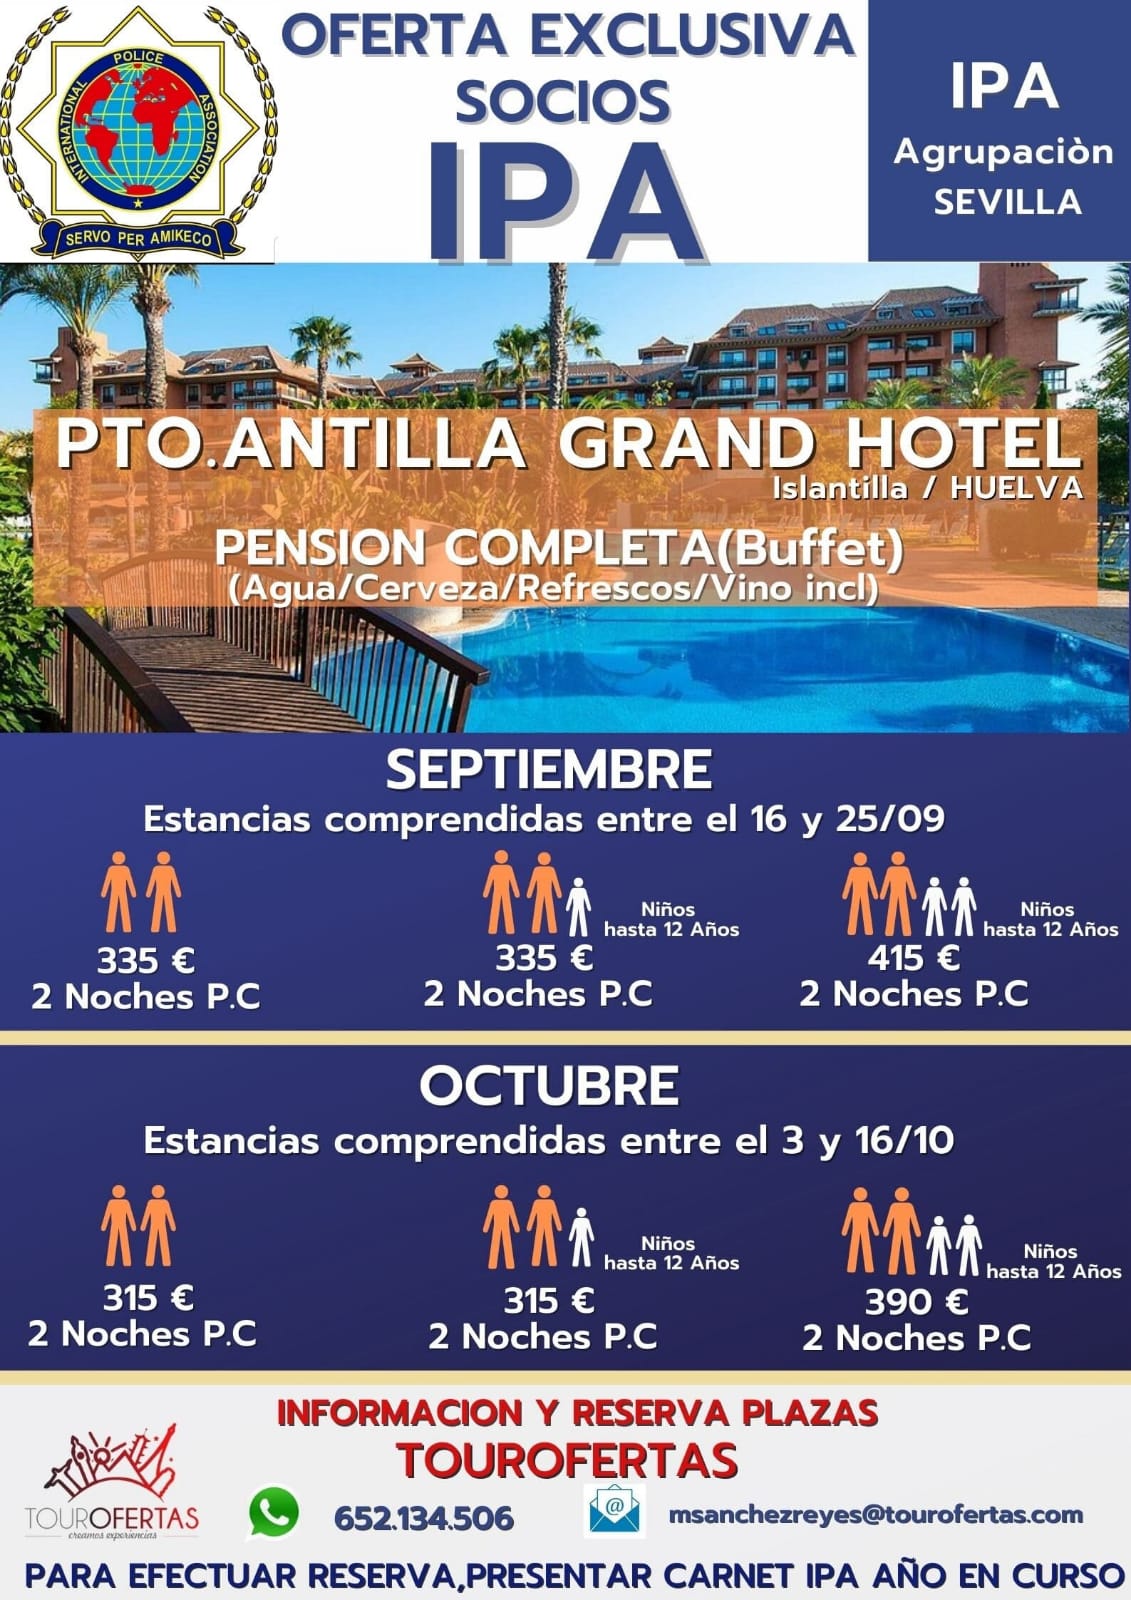 Pto. Antilla Grand Hotel